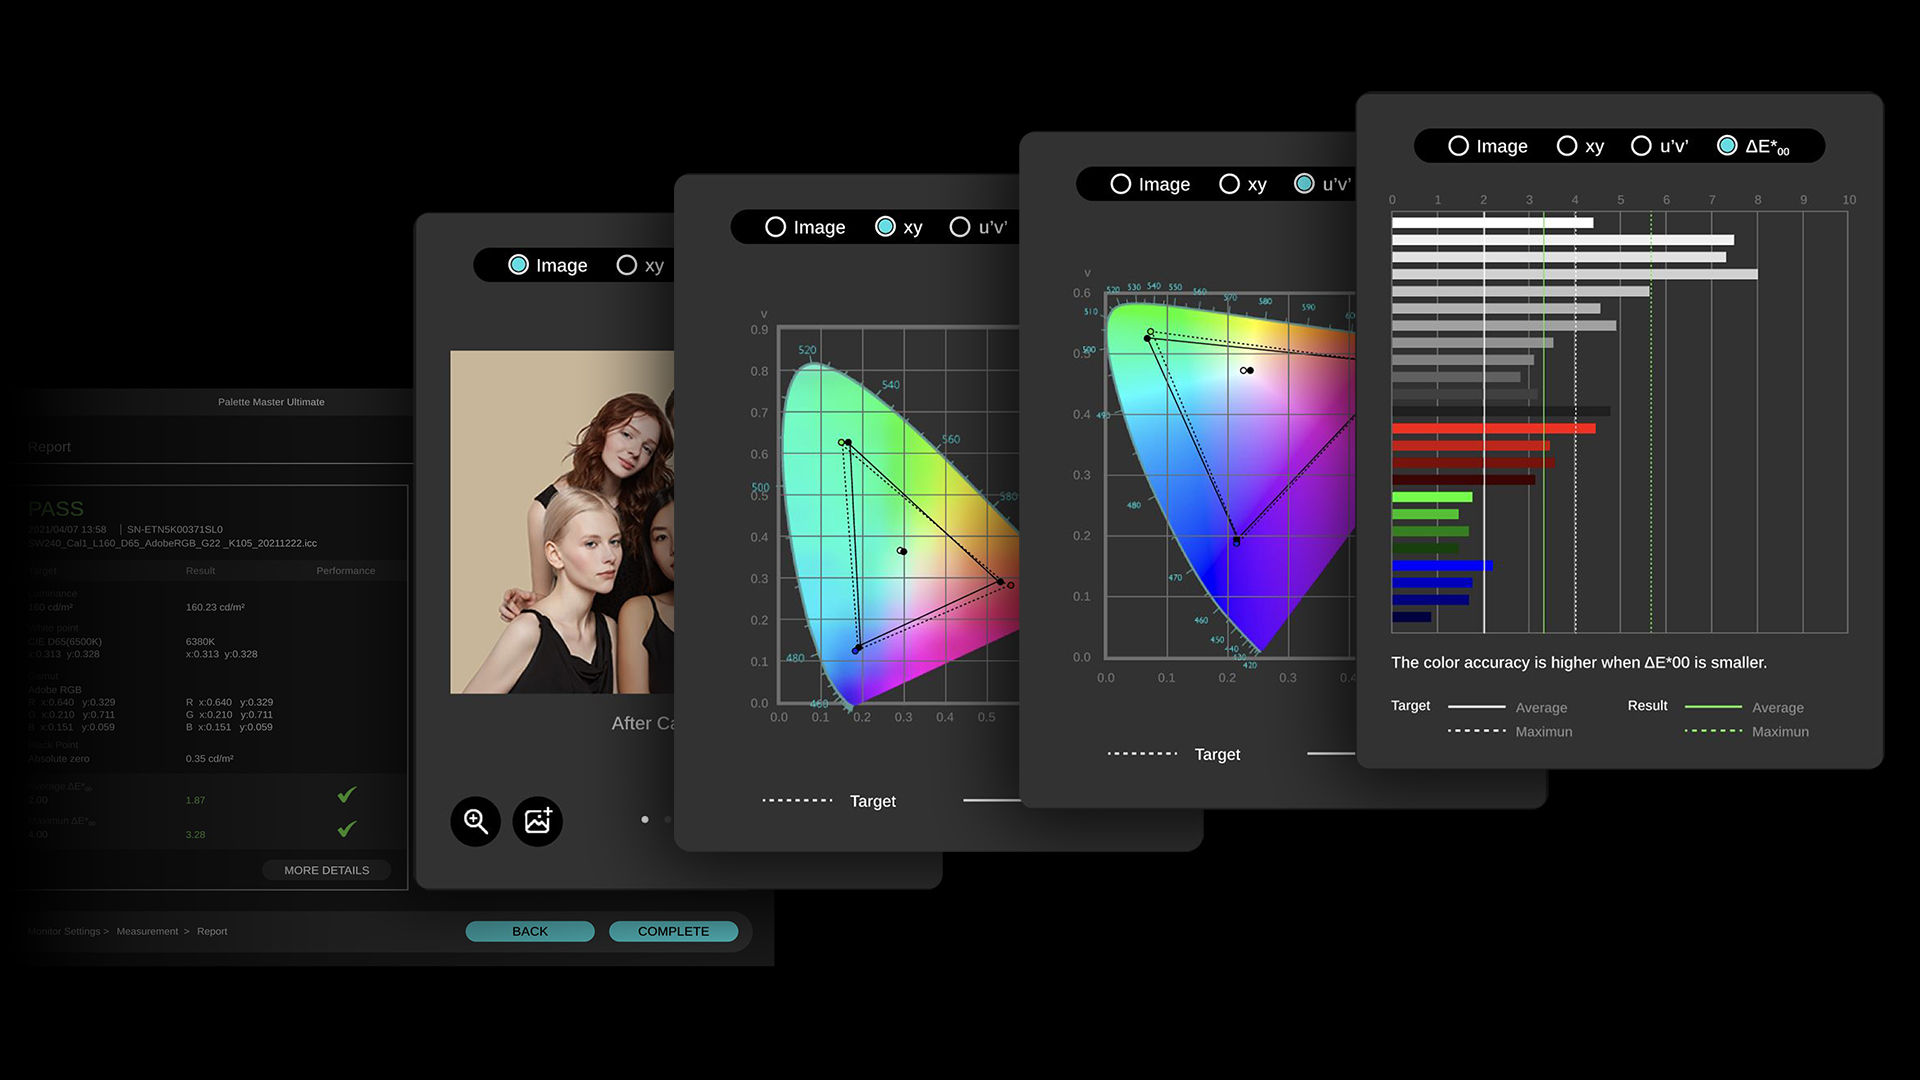 Met BenQ Palette Master Ultimate kan de gebruiker een beknopt rapport krijgen en vervolgens de referentieafbeeldingen of eigen afbeeldingen uploaden als benchmark om de kalibratieresultaten op verschillende intuïtieve manieren te controleren. 